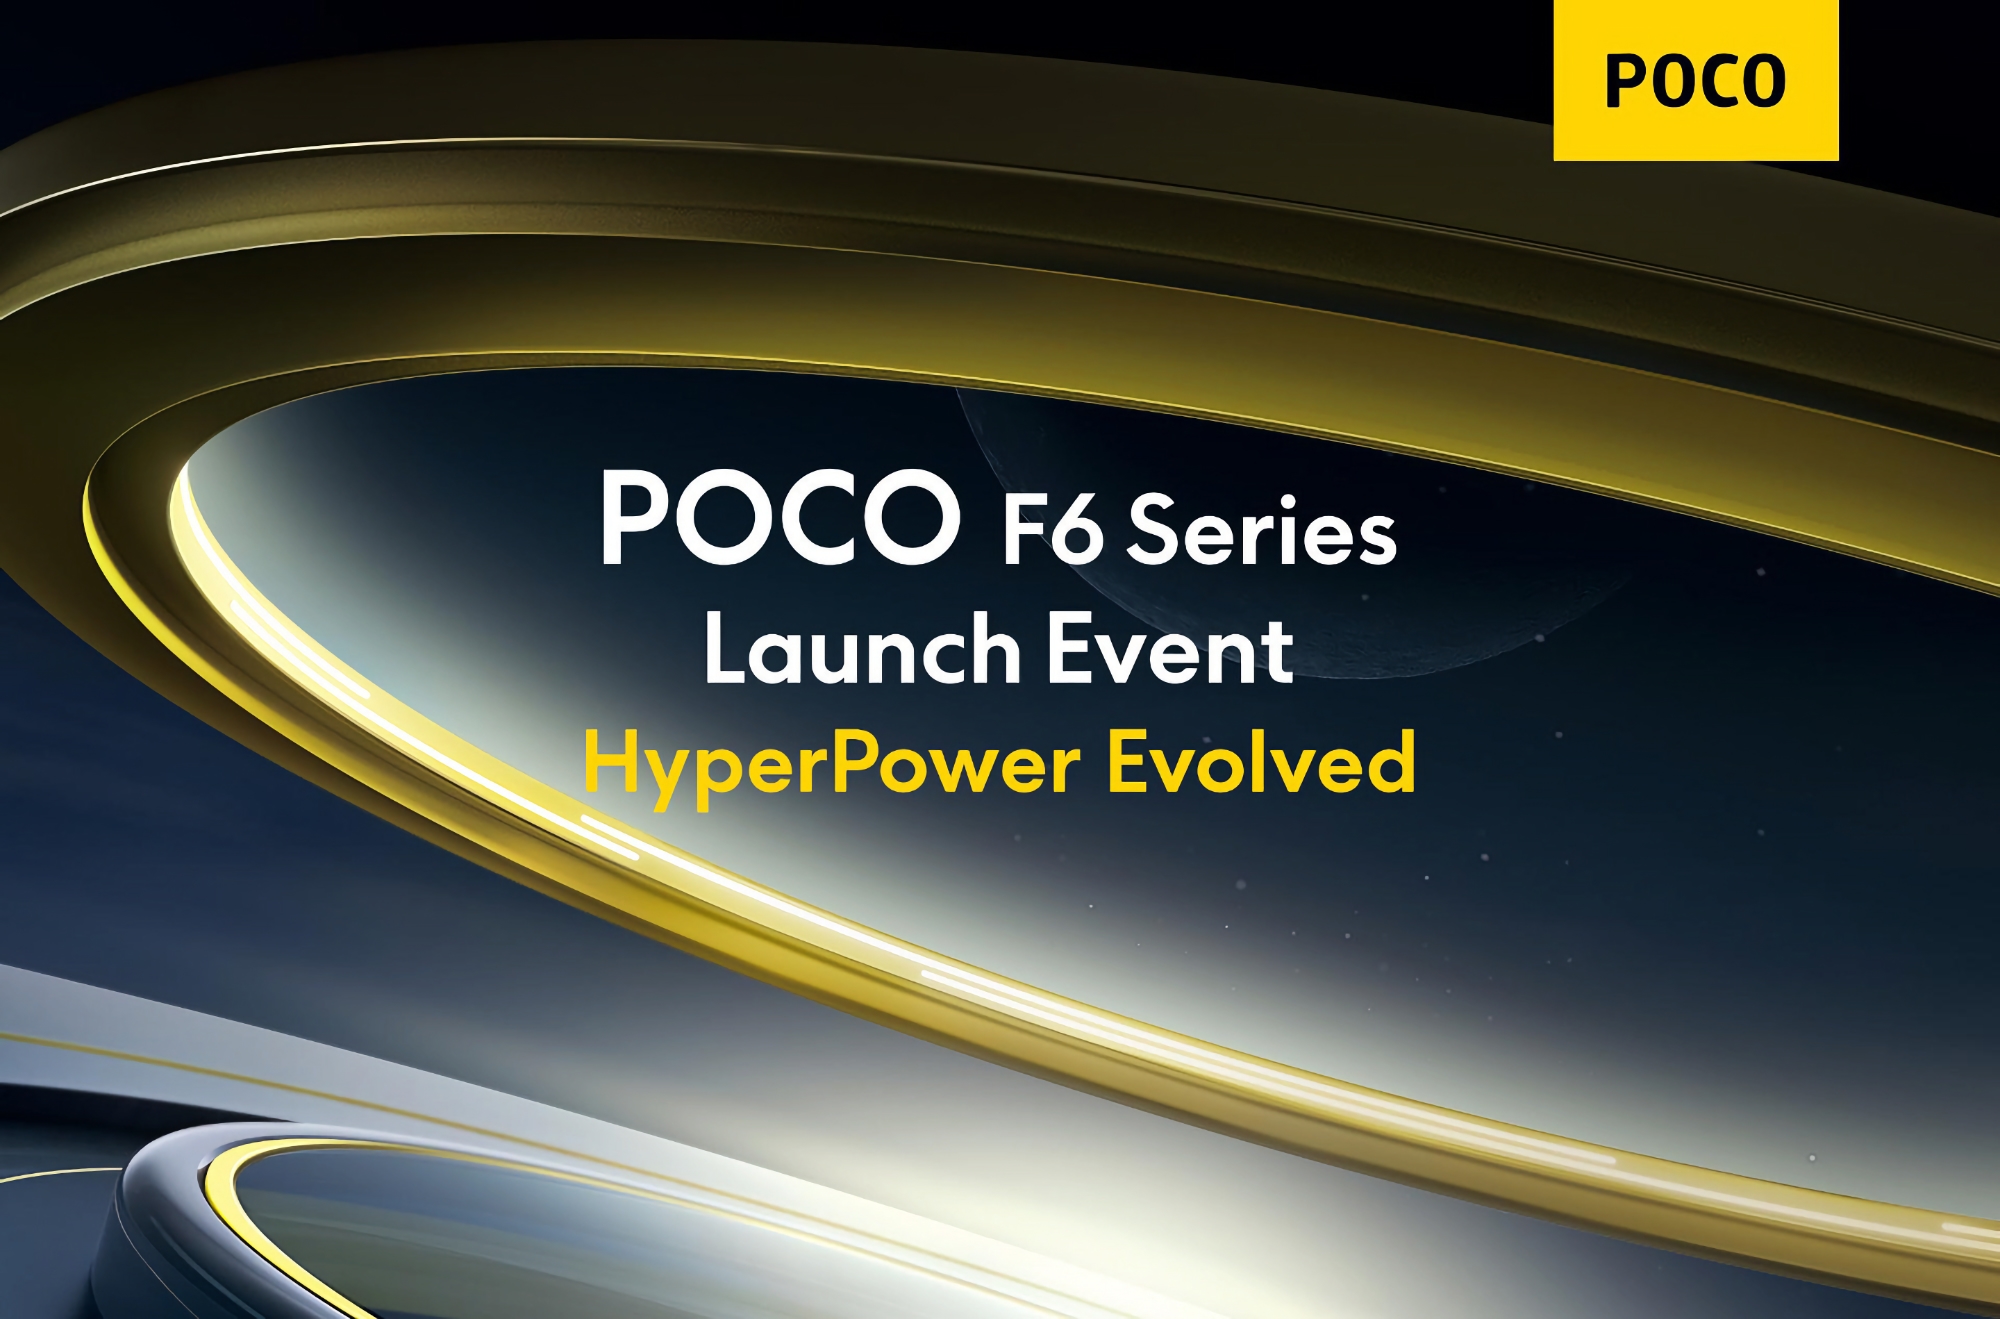 Waar en wanneer kun je de presentatie van de POCO F6, POCO F6 Pro smartphones en POCO Pad tablet bekijken?